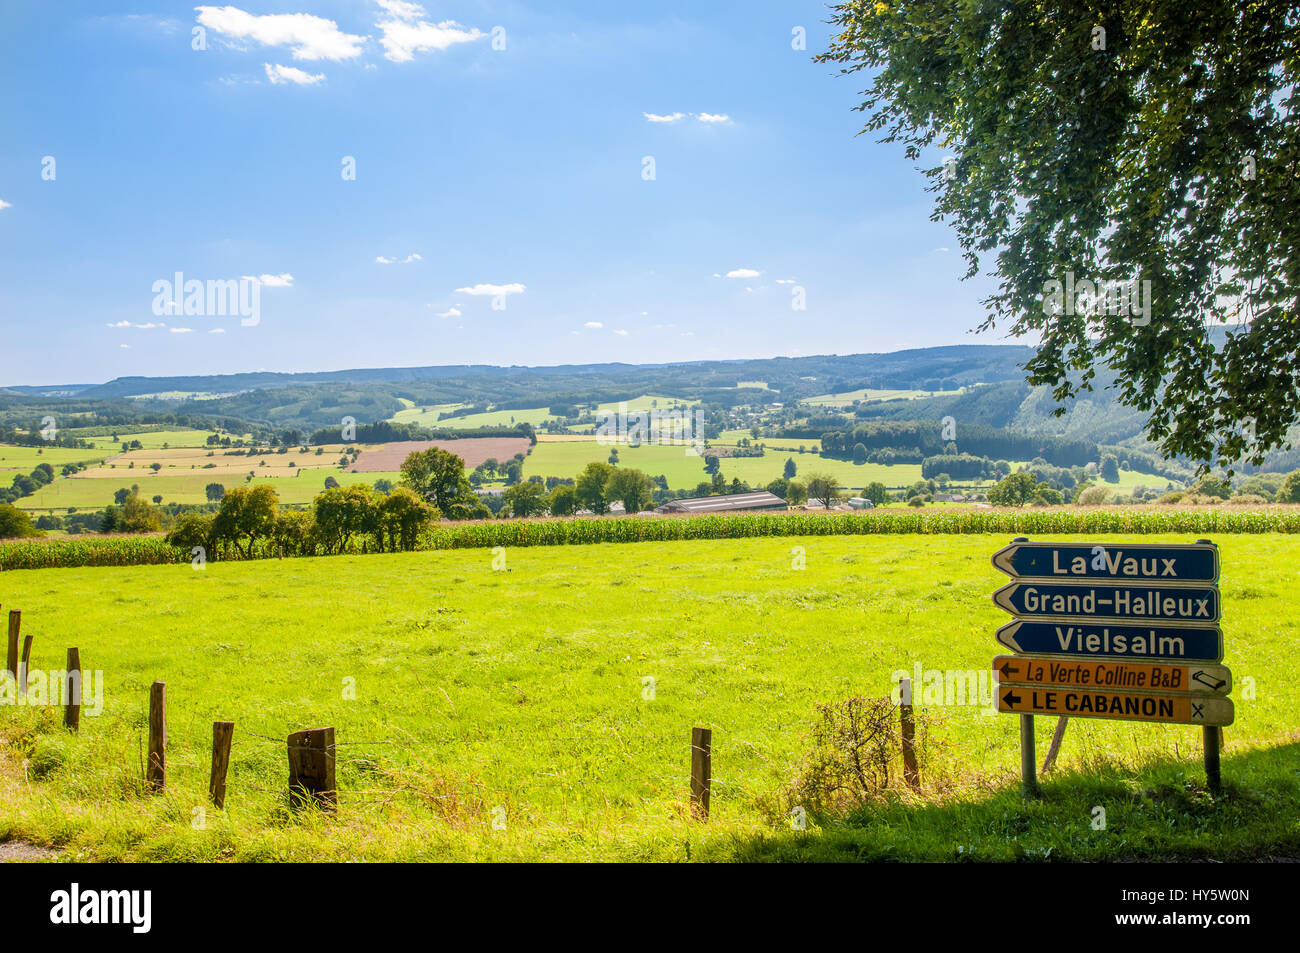 La signalisation routière dans les Ardennes par la Vaux - Belgique Banque D'Images